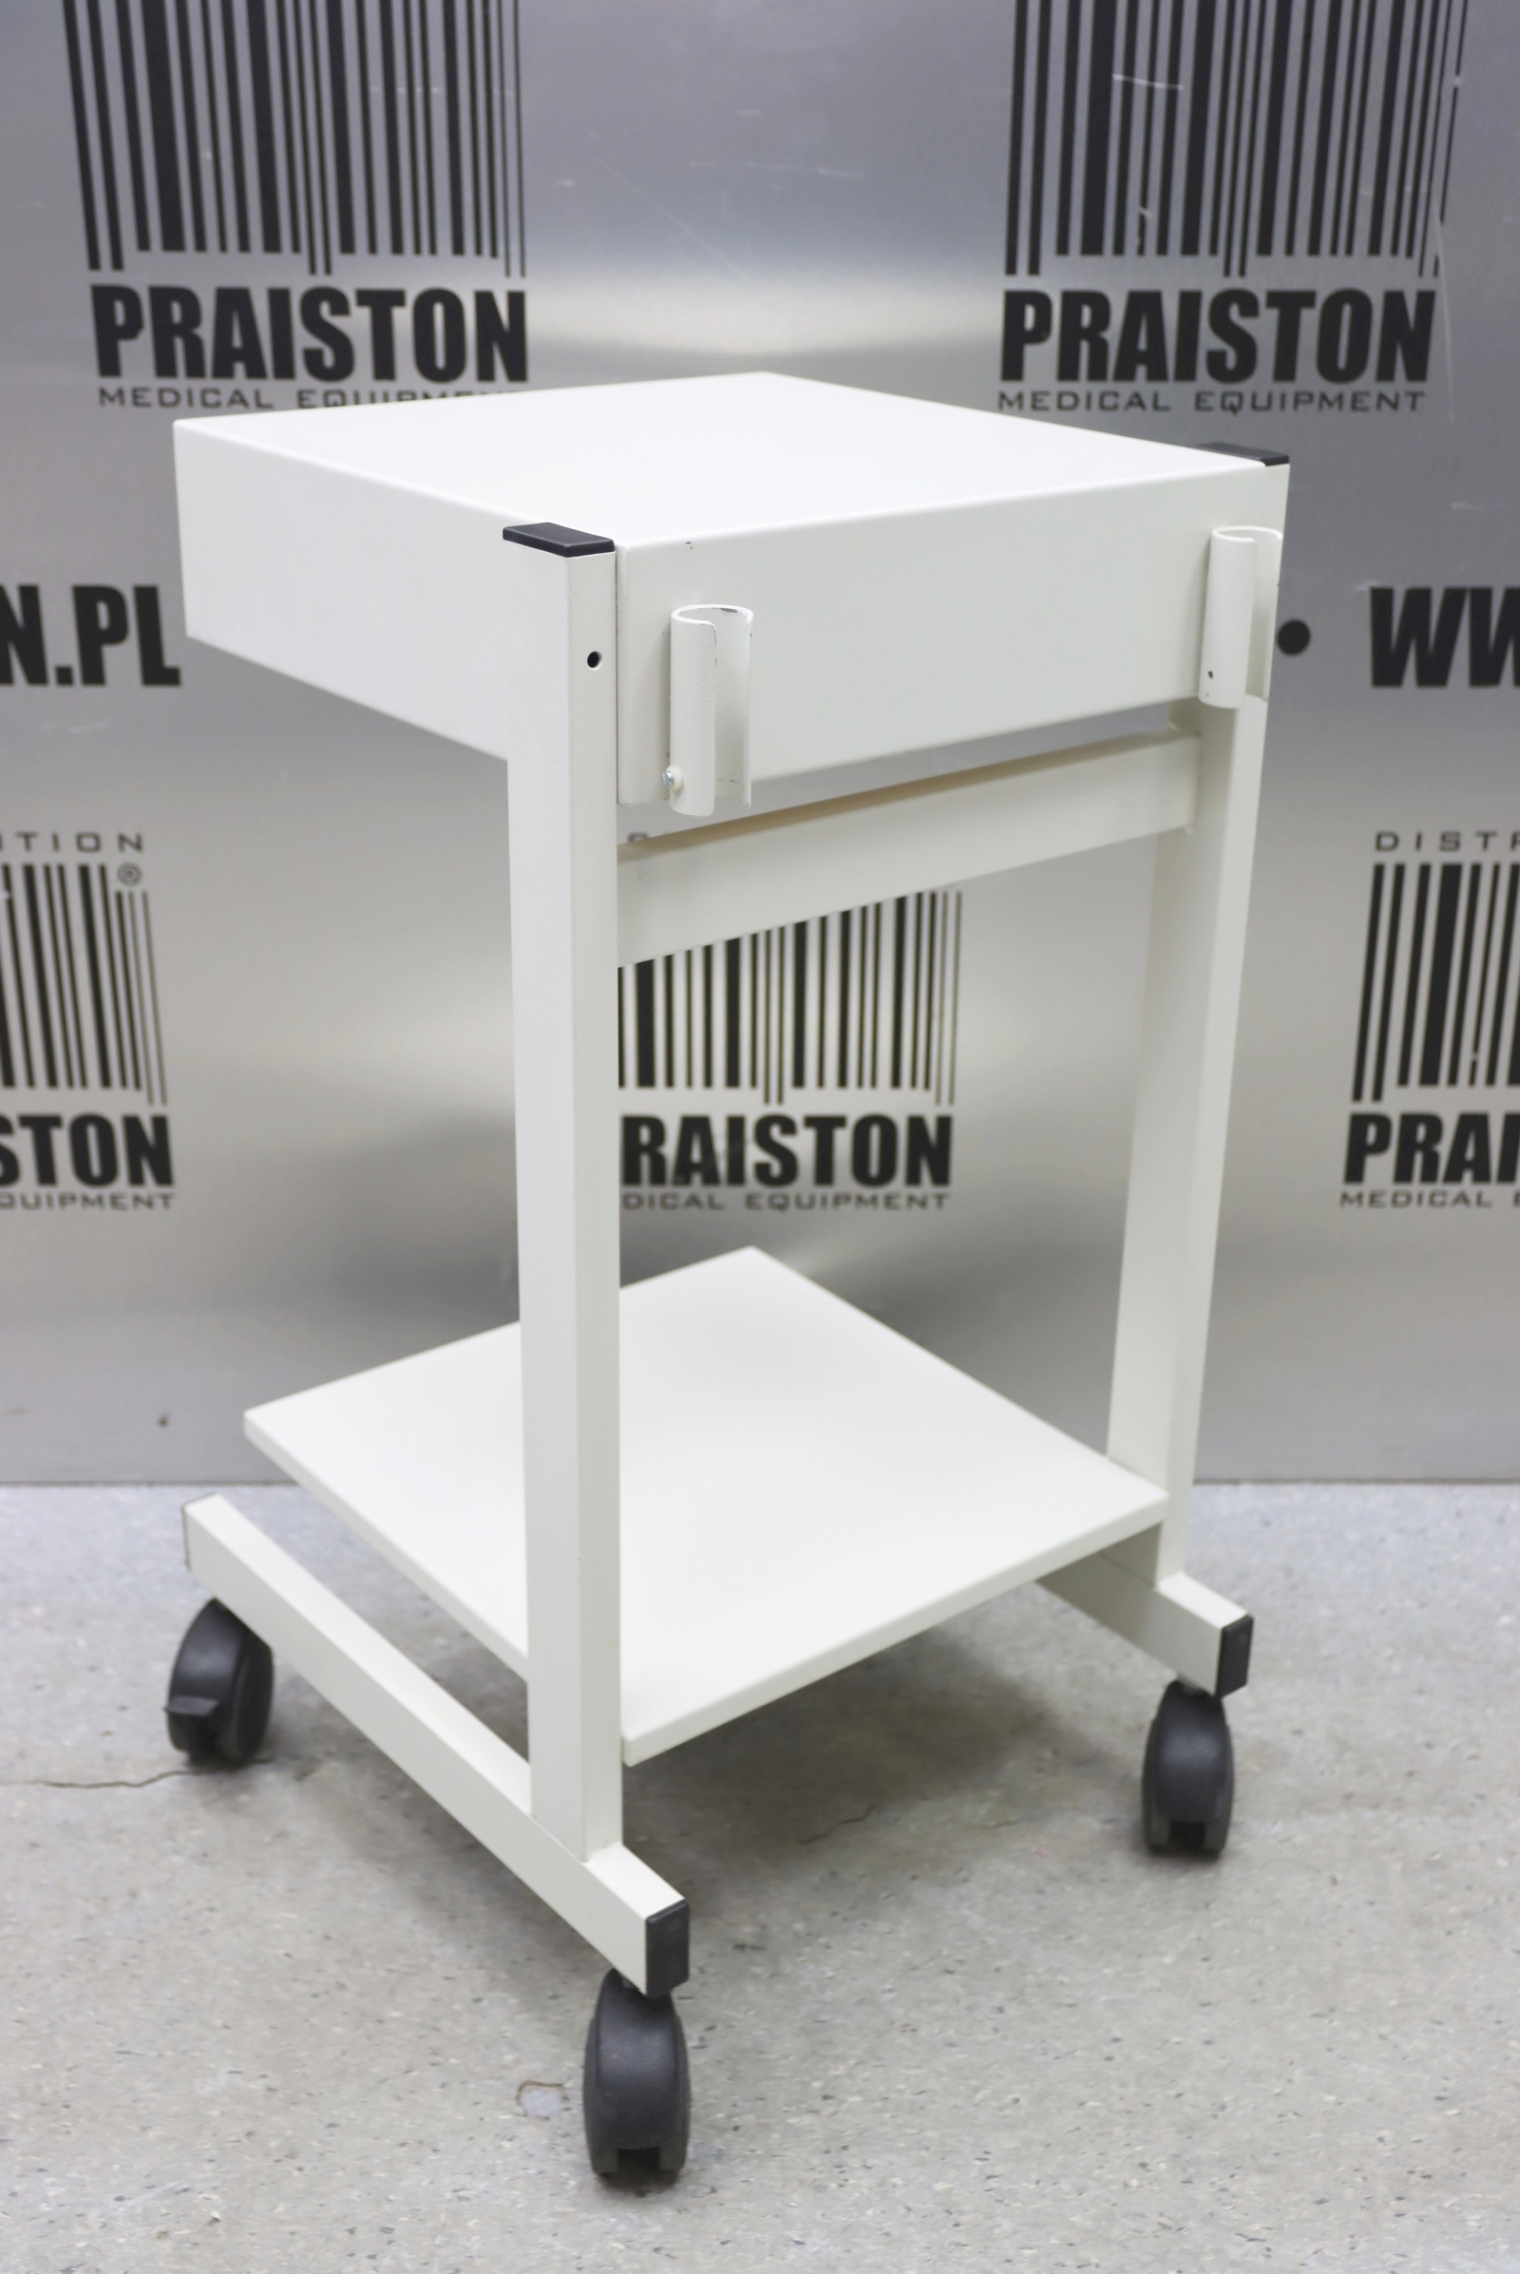 Wózki na aparaturę medyczną używane B/D Schiller - Praiston rekondycjonowany